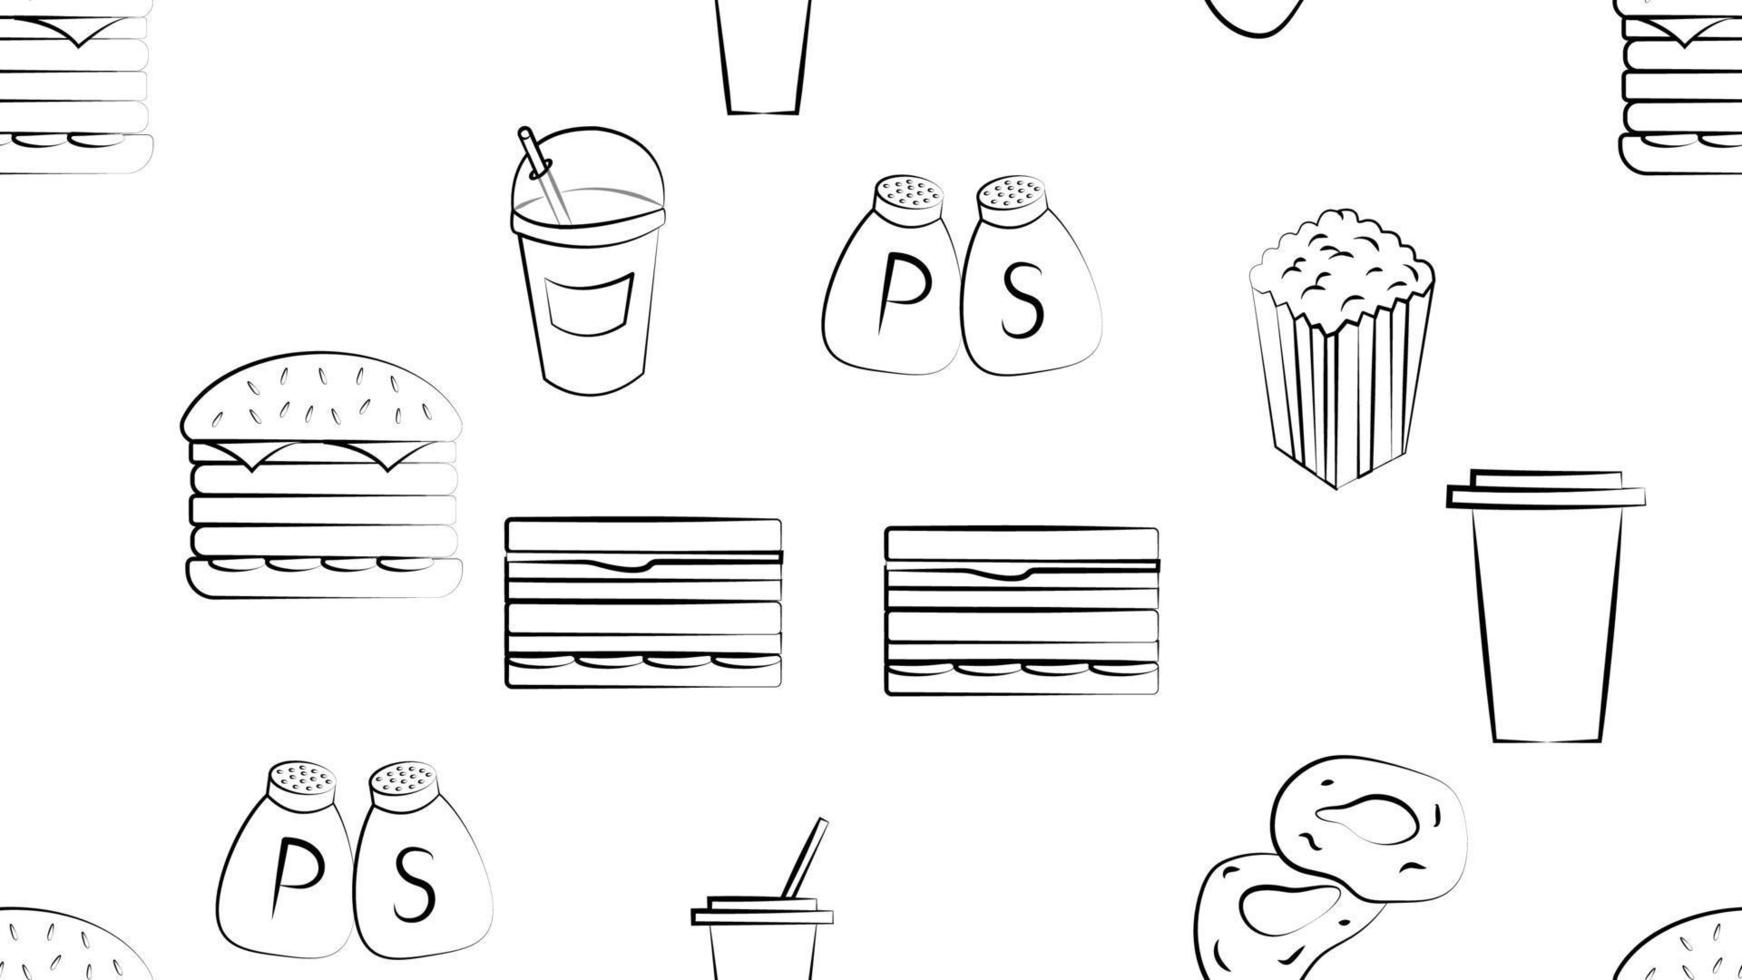 zwart en wit eindeloos naadloos patroon van voedsel en tussendoortje items pictogrammen reeks voor restaurant bar cafe ei, paddestoel, vis, ingeblikt voedsel, ui, pizza, groenen. de achtergrond vector